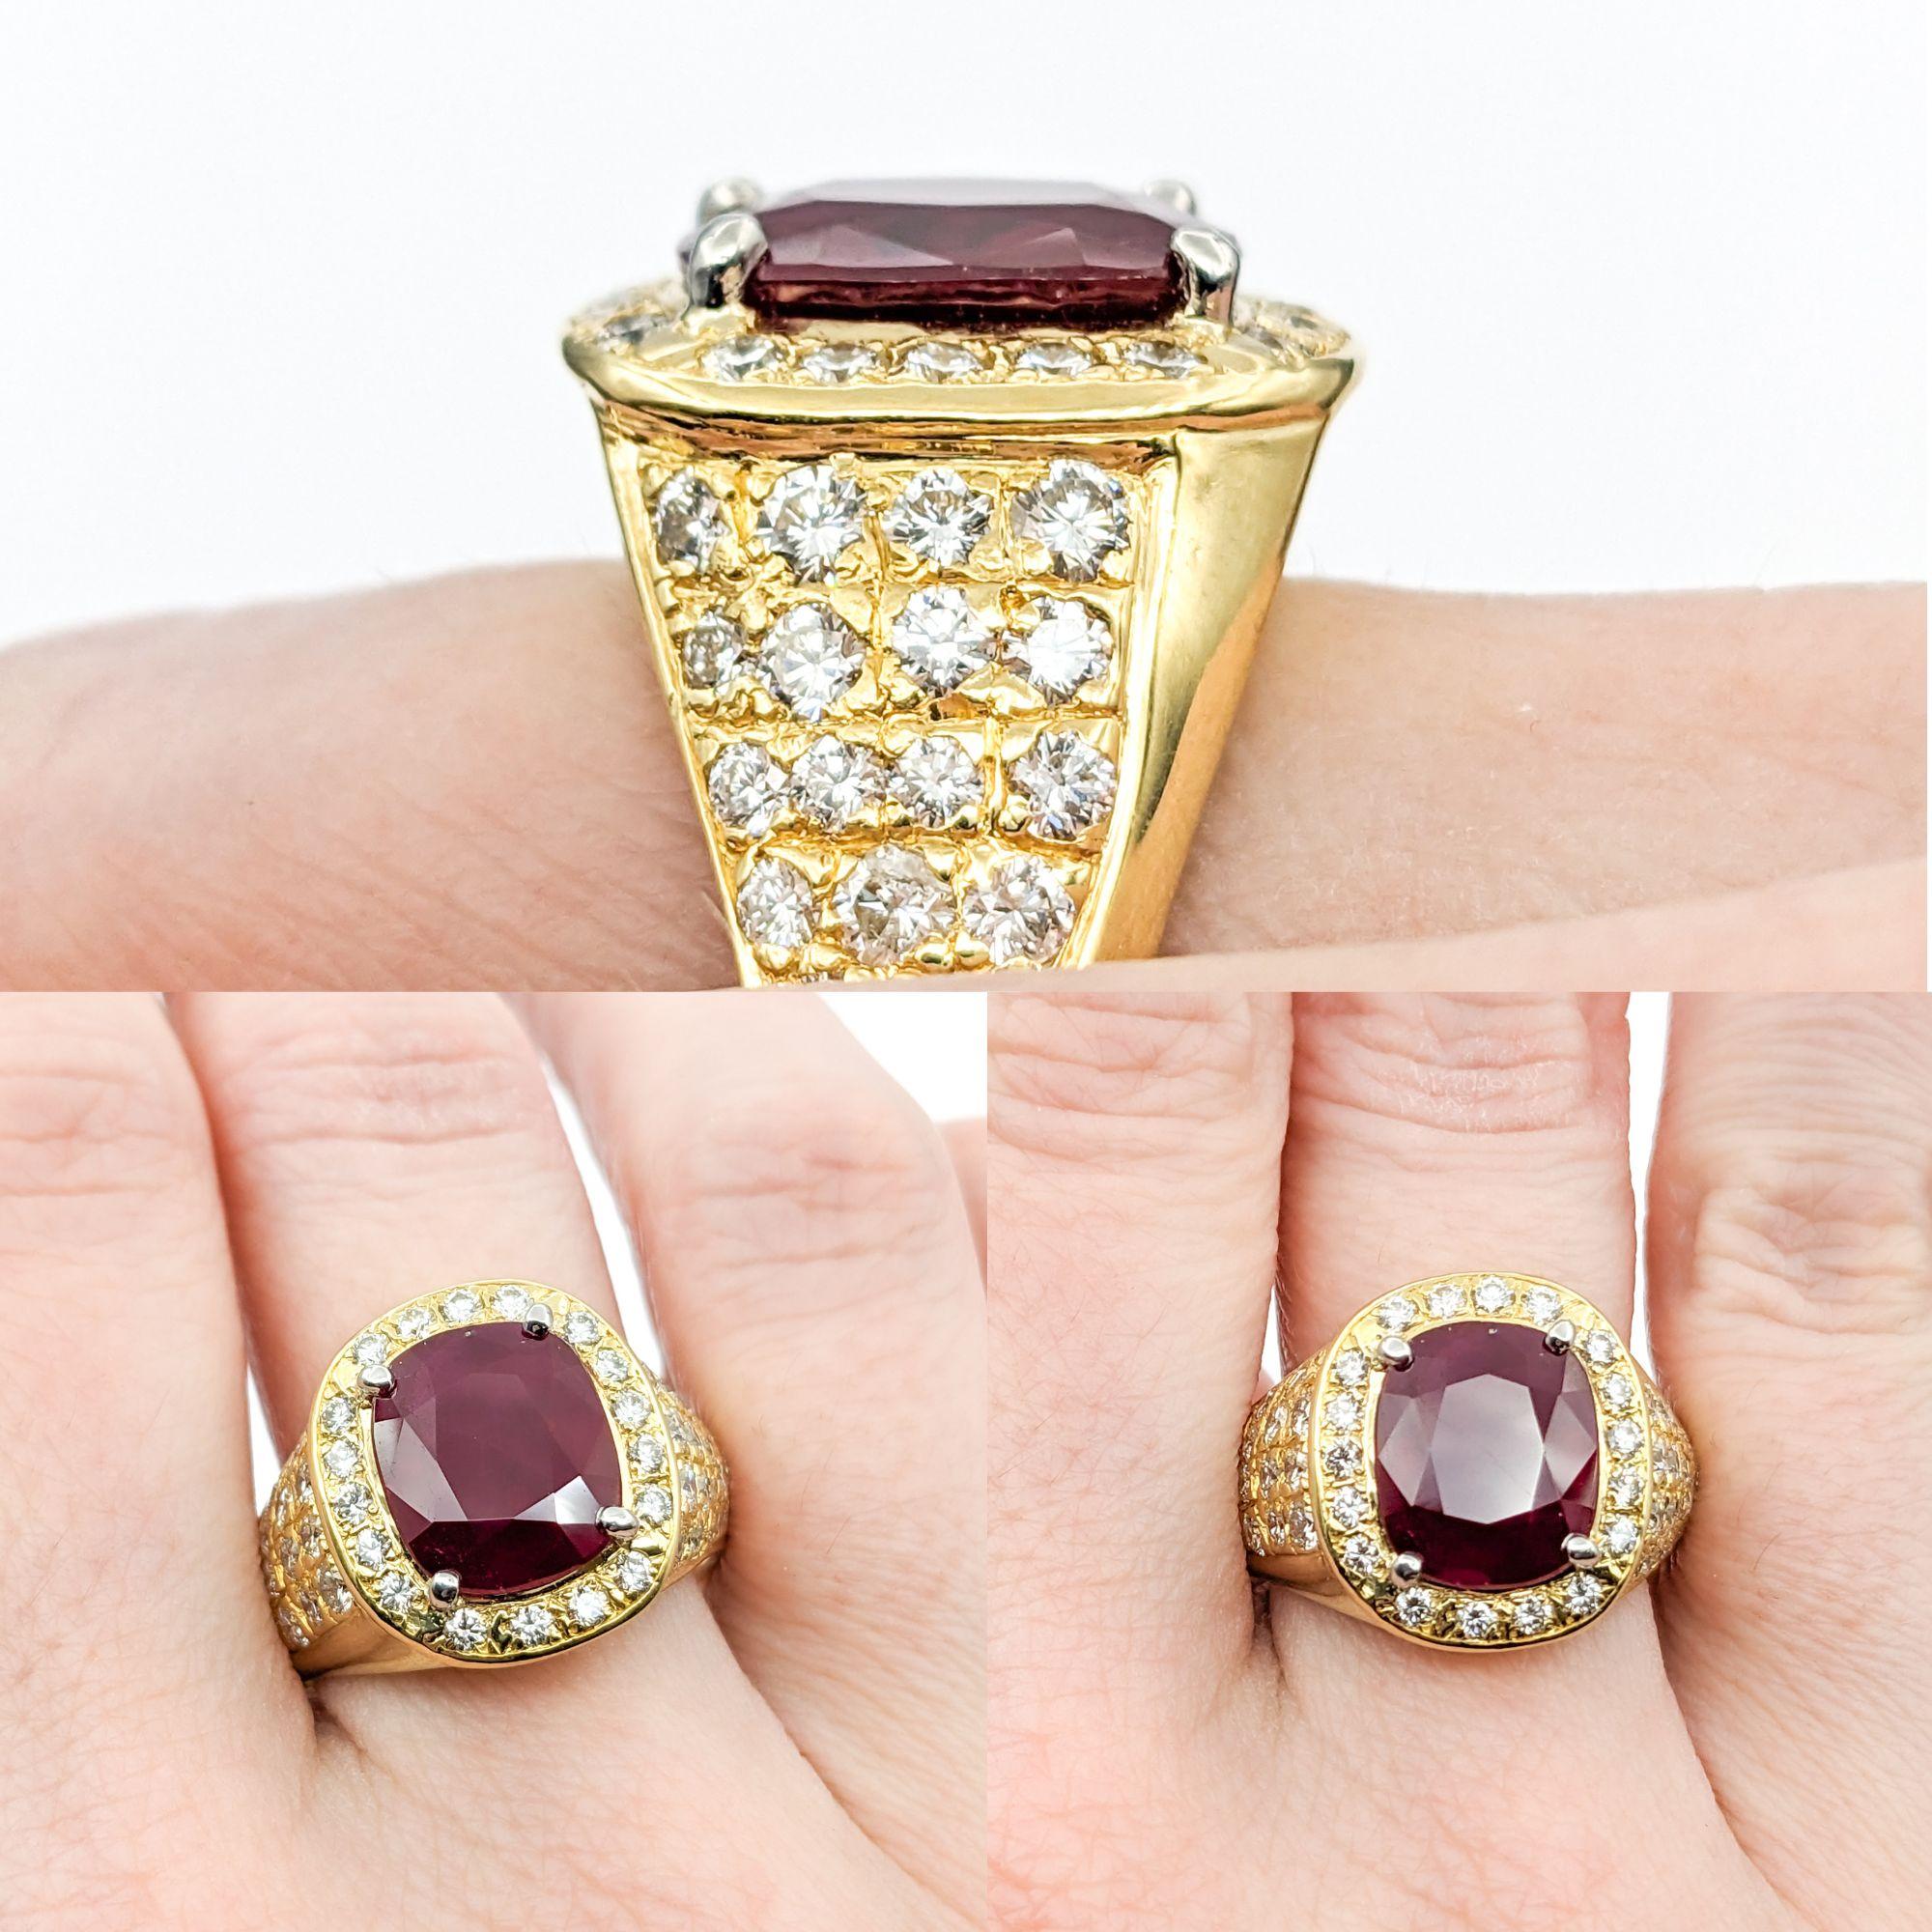 GIA-zertifiziert 5,87ct Heat-only birmanischen Rubin & 1,50ctw Diamanten Ring in Gelbgold

Dieser exquisite Ring ist meisterhaft aus 18-karätigem Gelbgold gefertigt und trägt als Herzstück einen bemerkenswerten, von GIA zertifizierten,